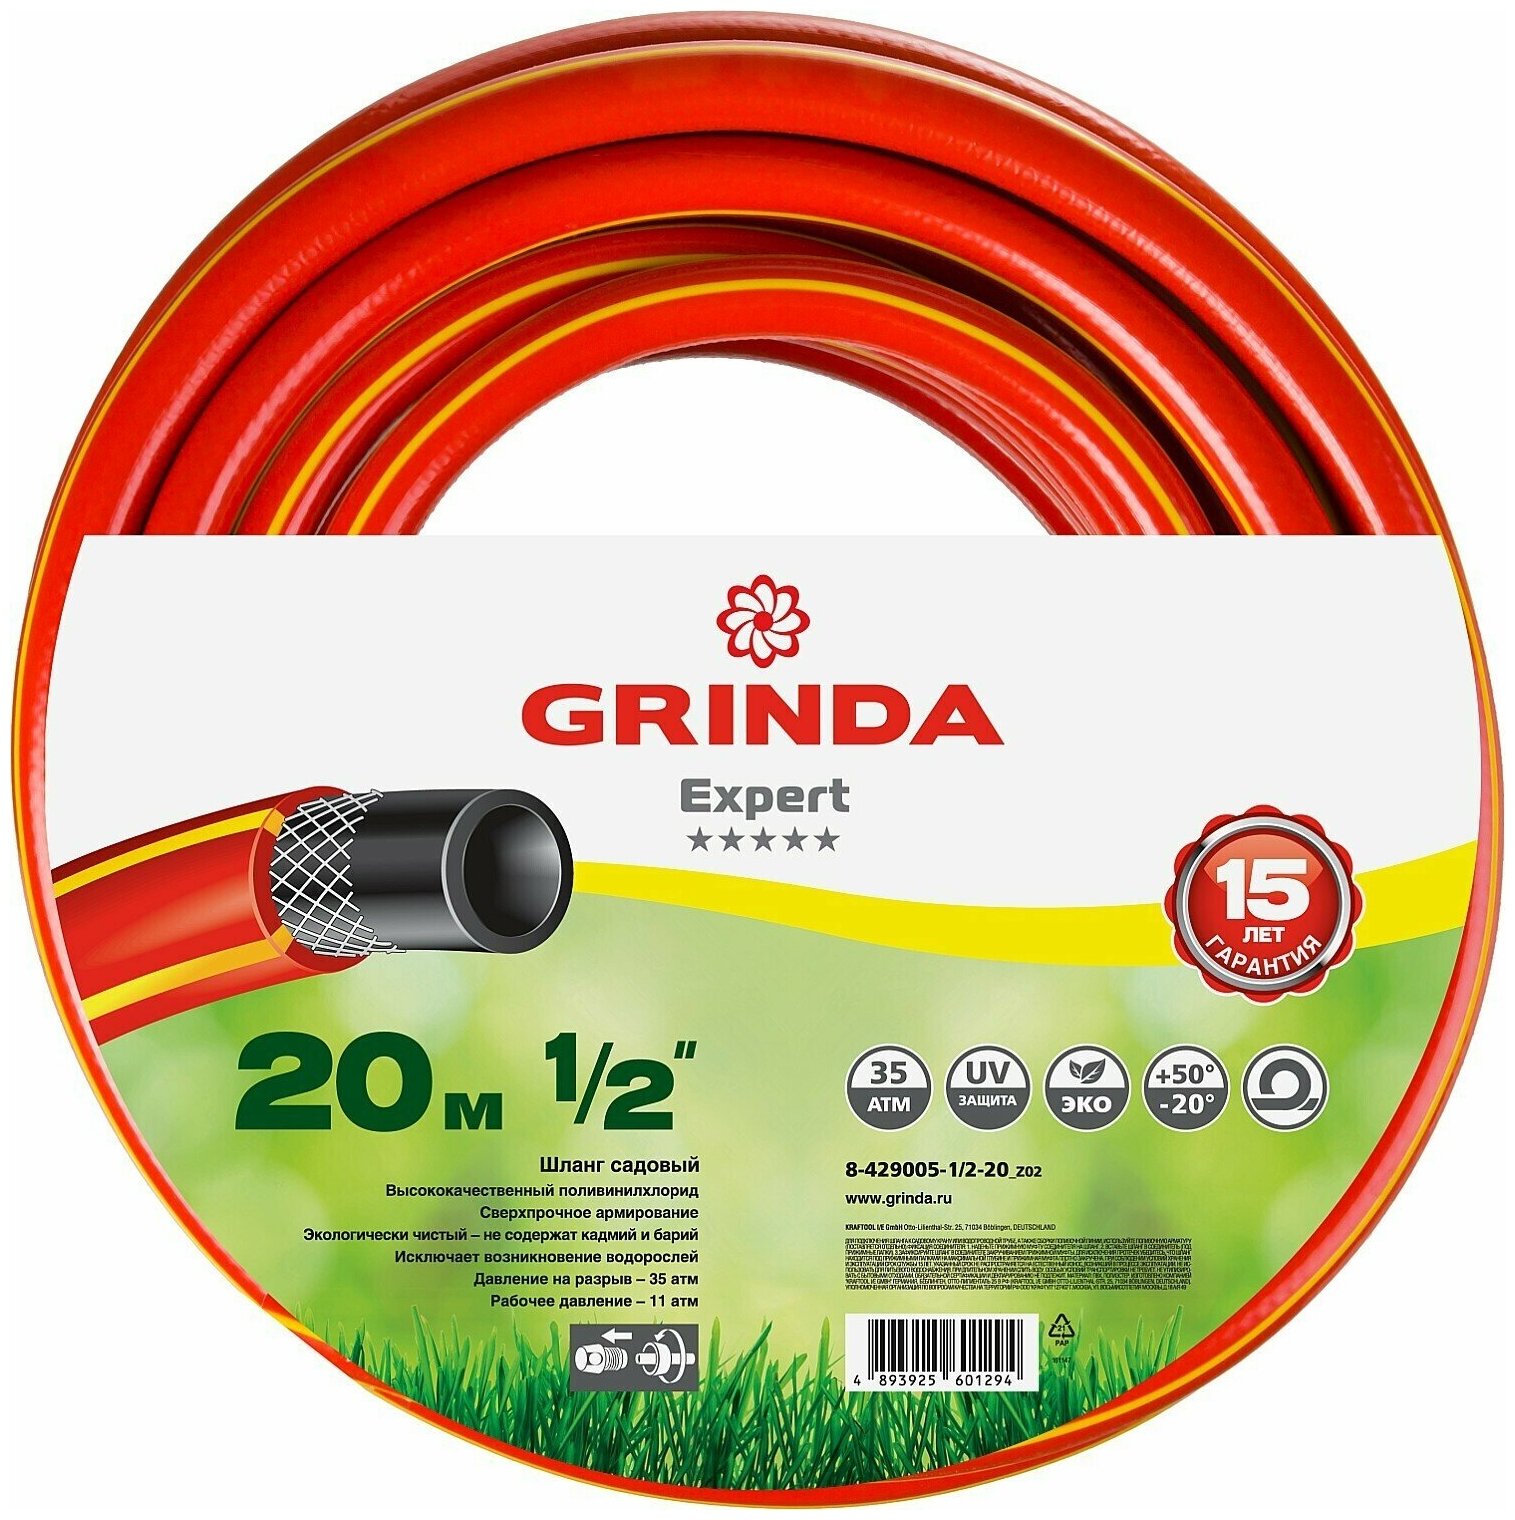 GRINDA PROLine EXPERT 1/2", 20 м, 35 атм трёхслойный поливочный шланг, армированный